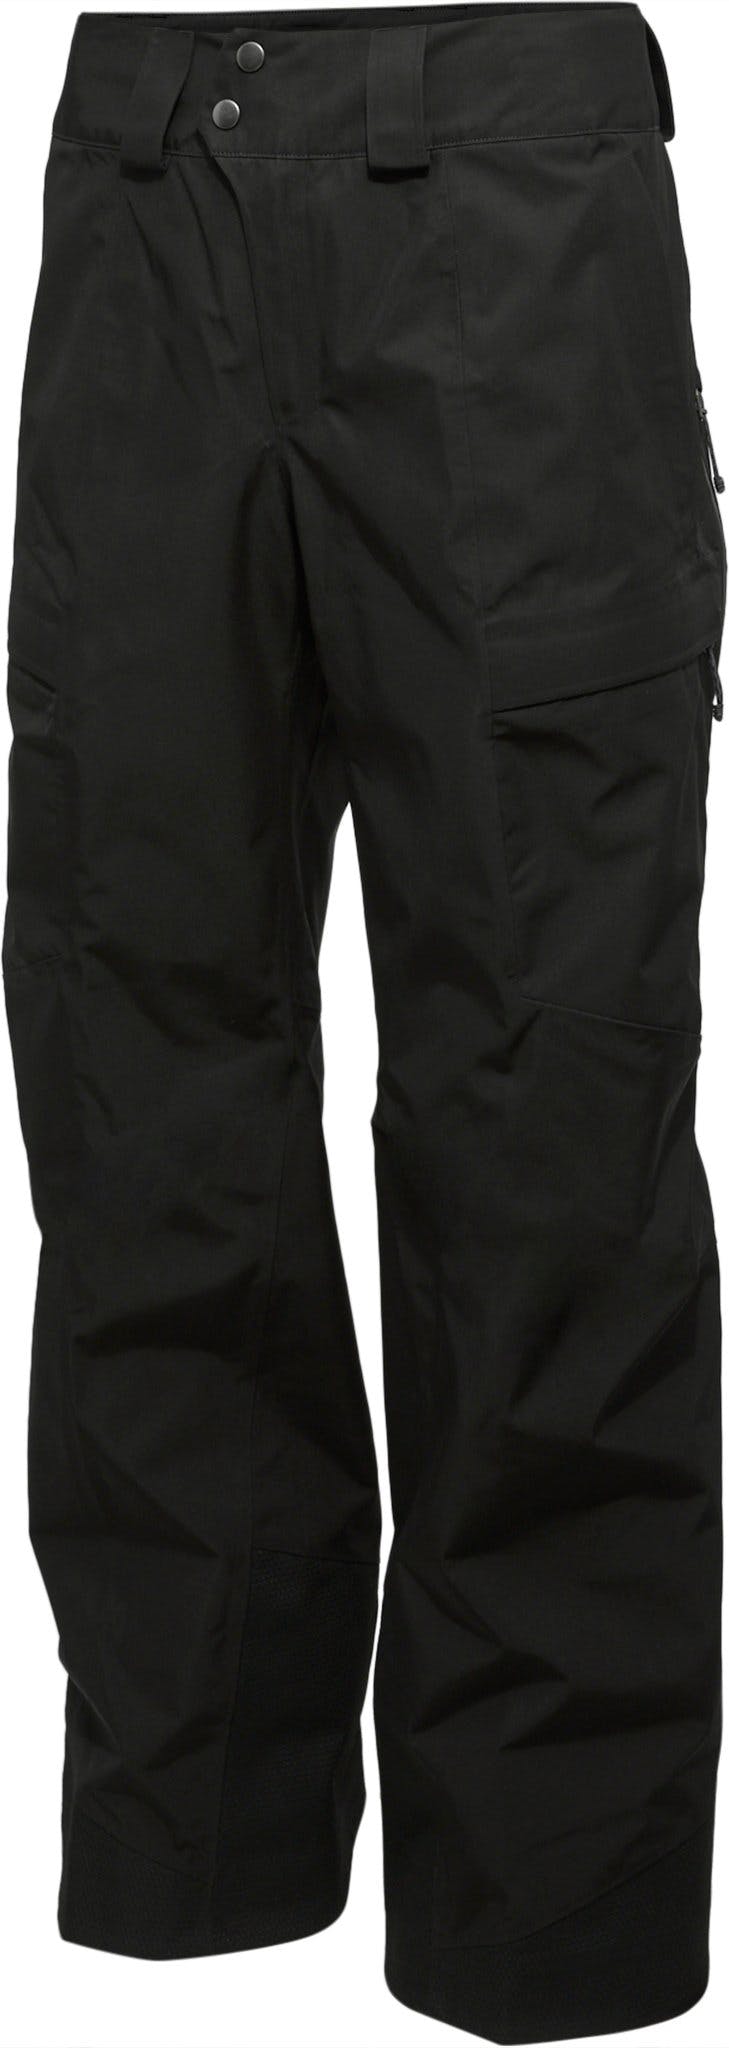 Numéro de l'image de la galerie de produits 4 pour le produit Pantalon coupe régulière Storm Shift - Homme